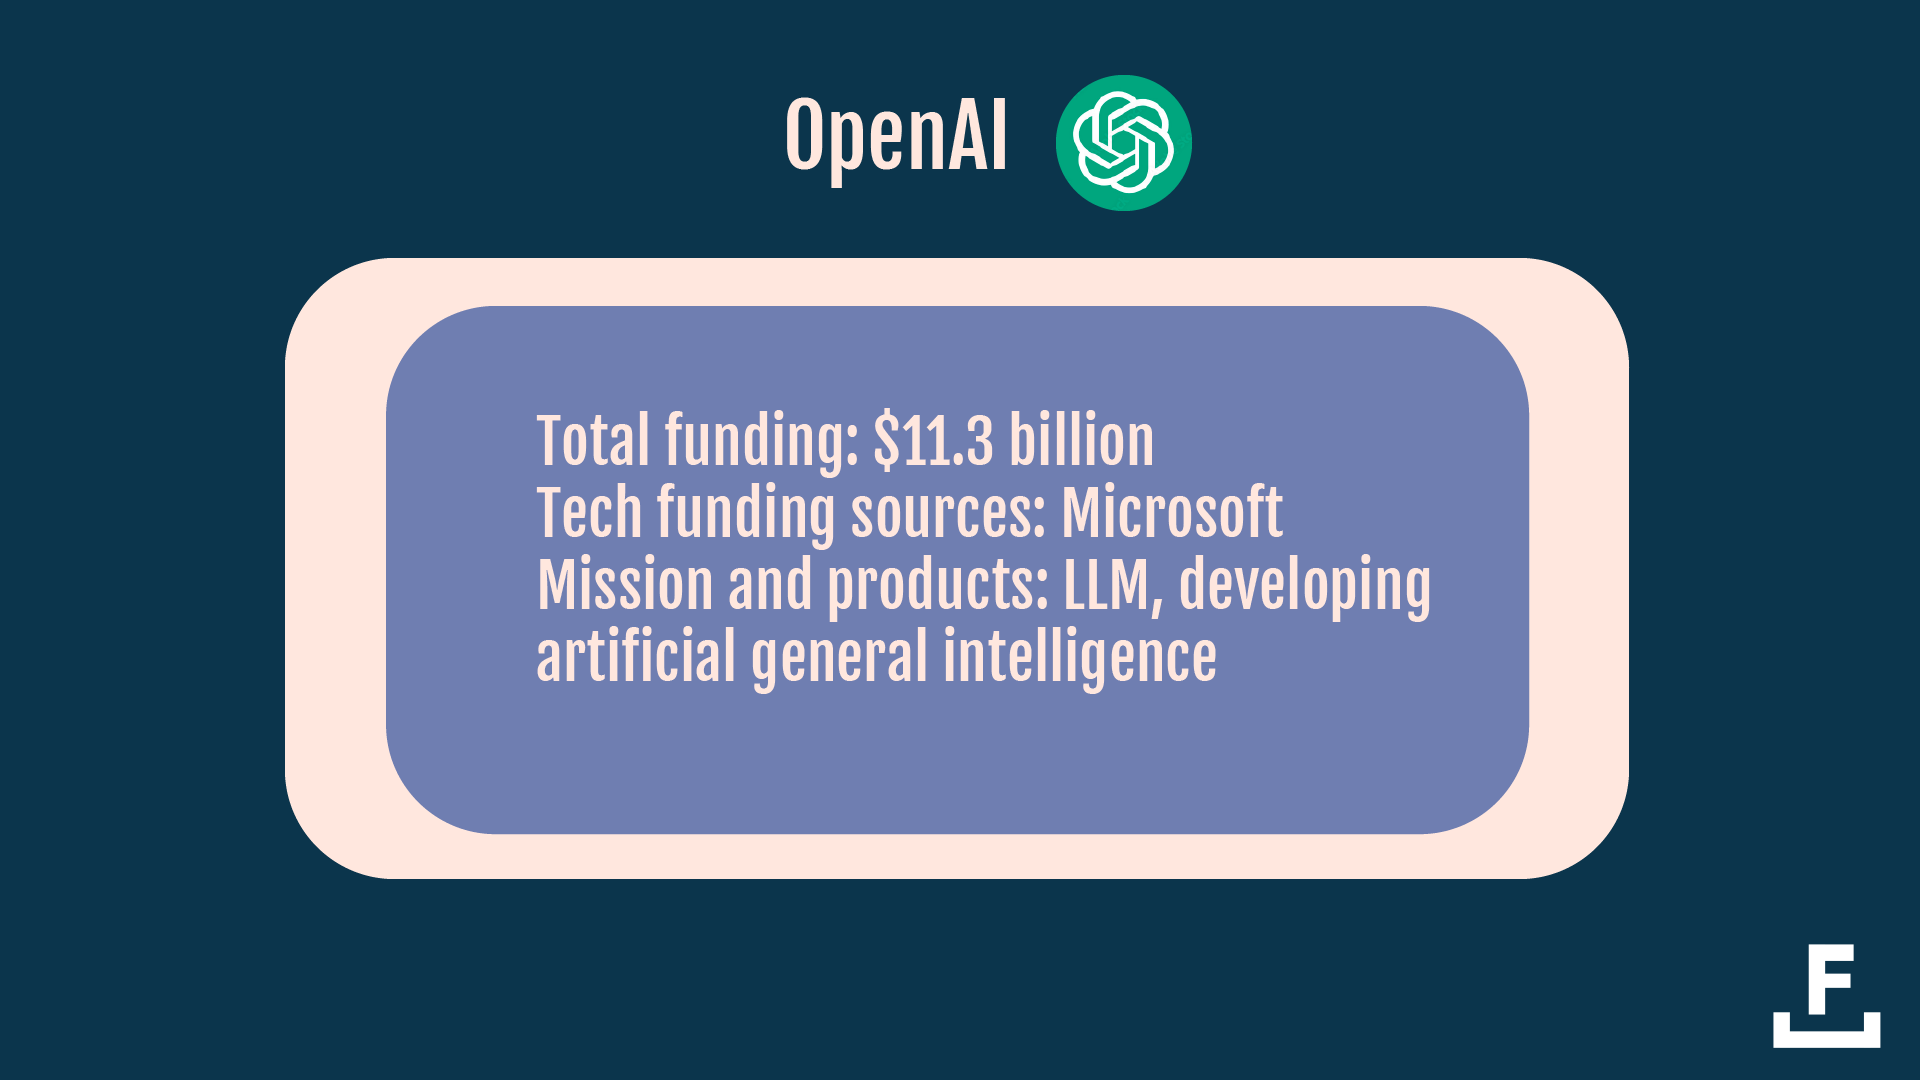 有关 OpenAI 的重要事实的描述